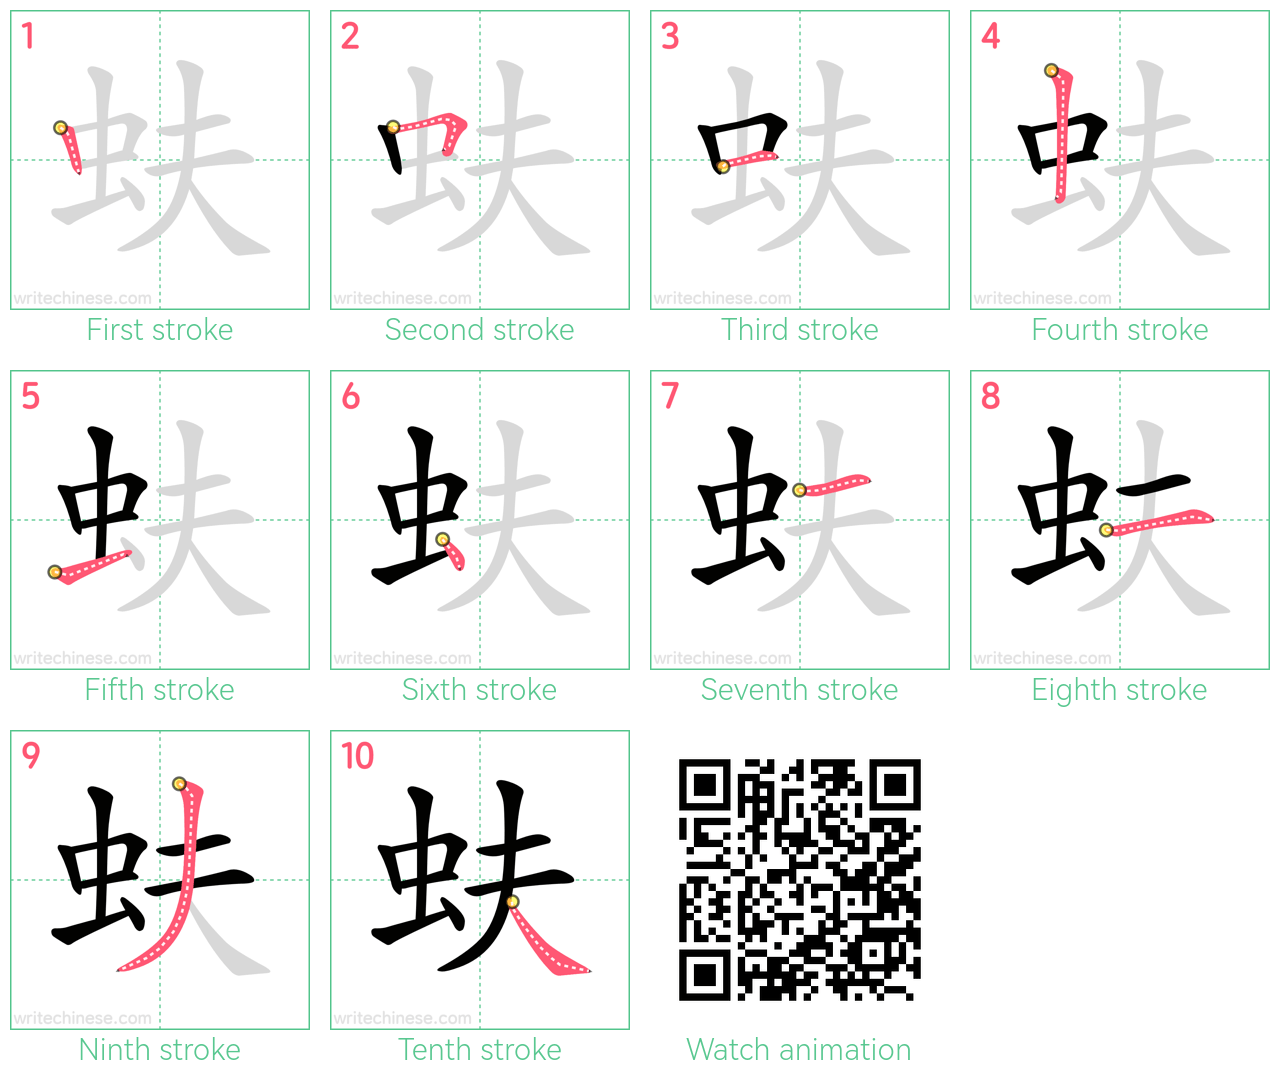 蚨 step-by-step stroke order diagrams